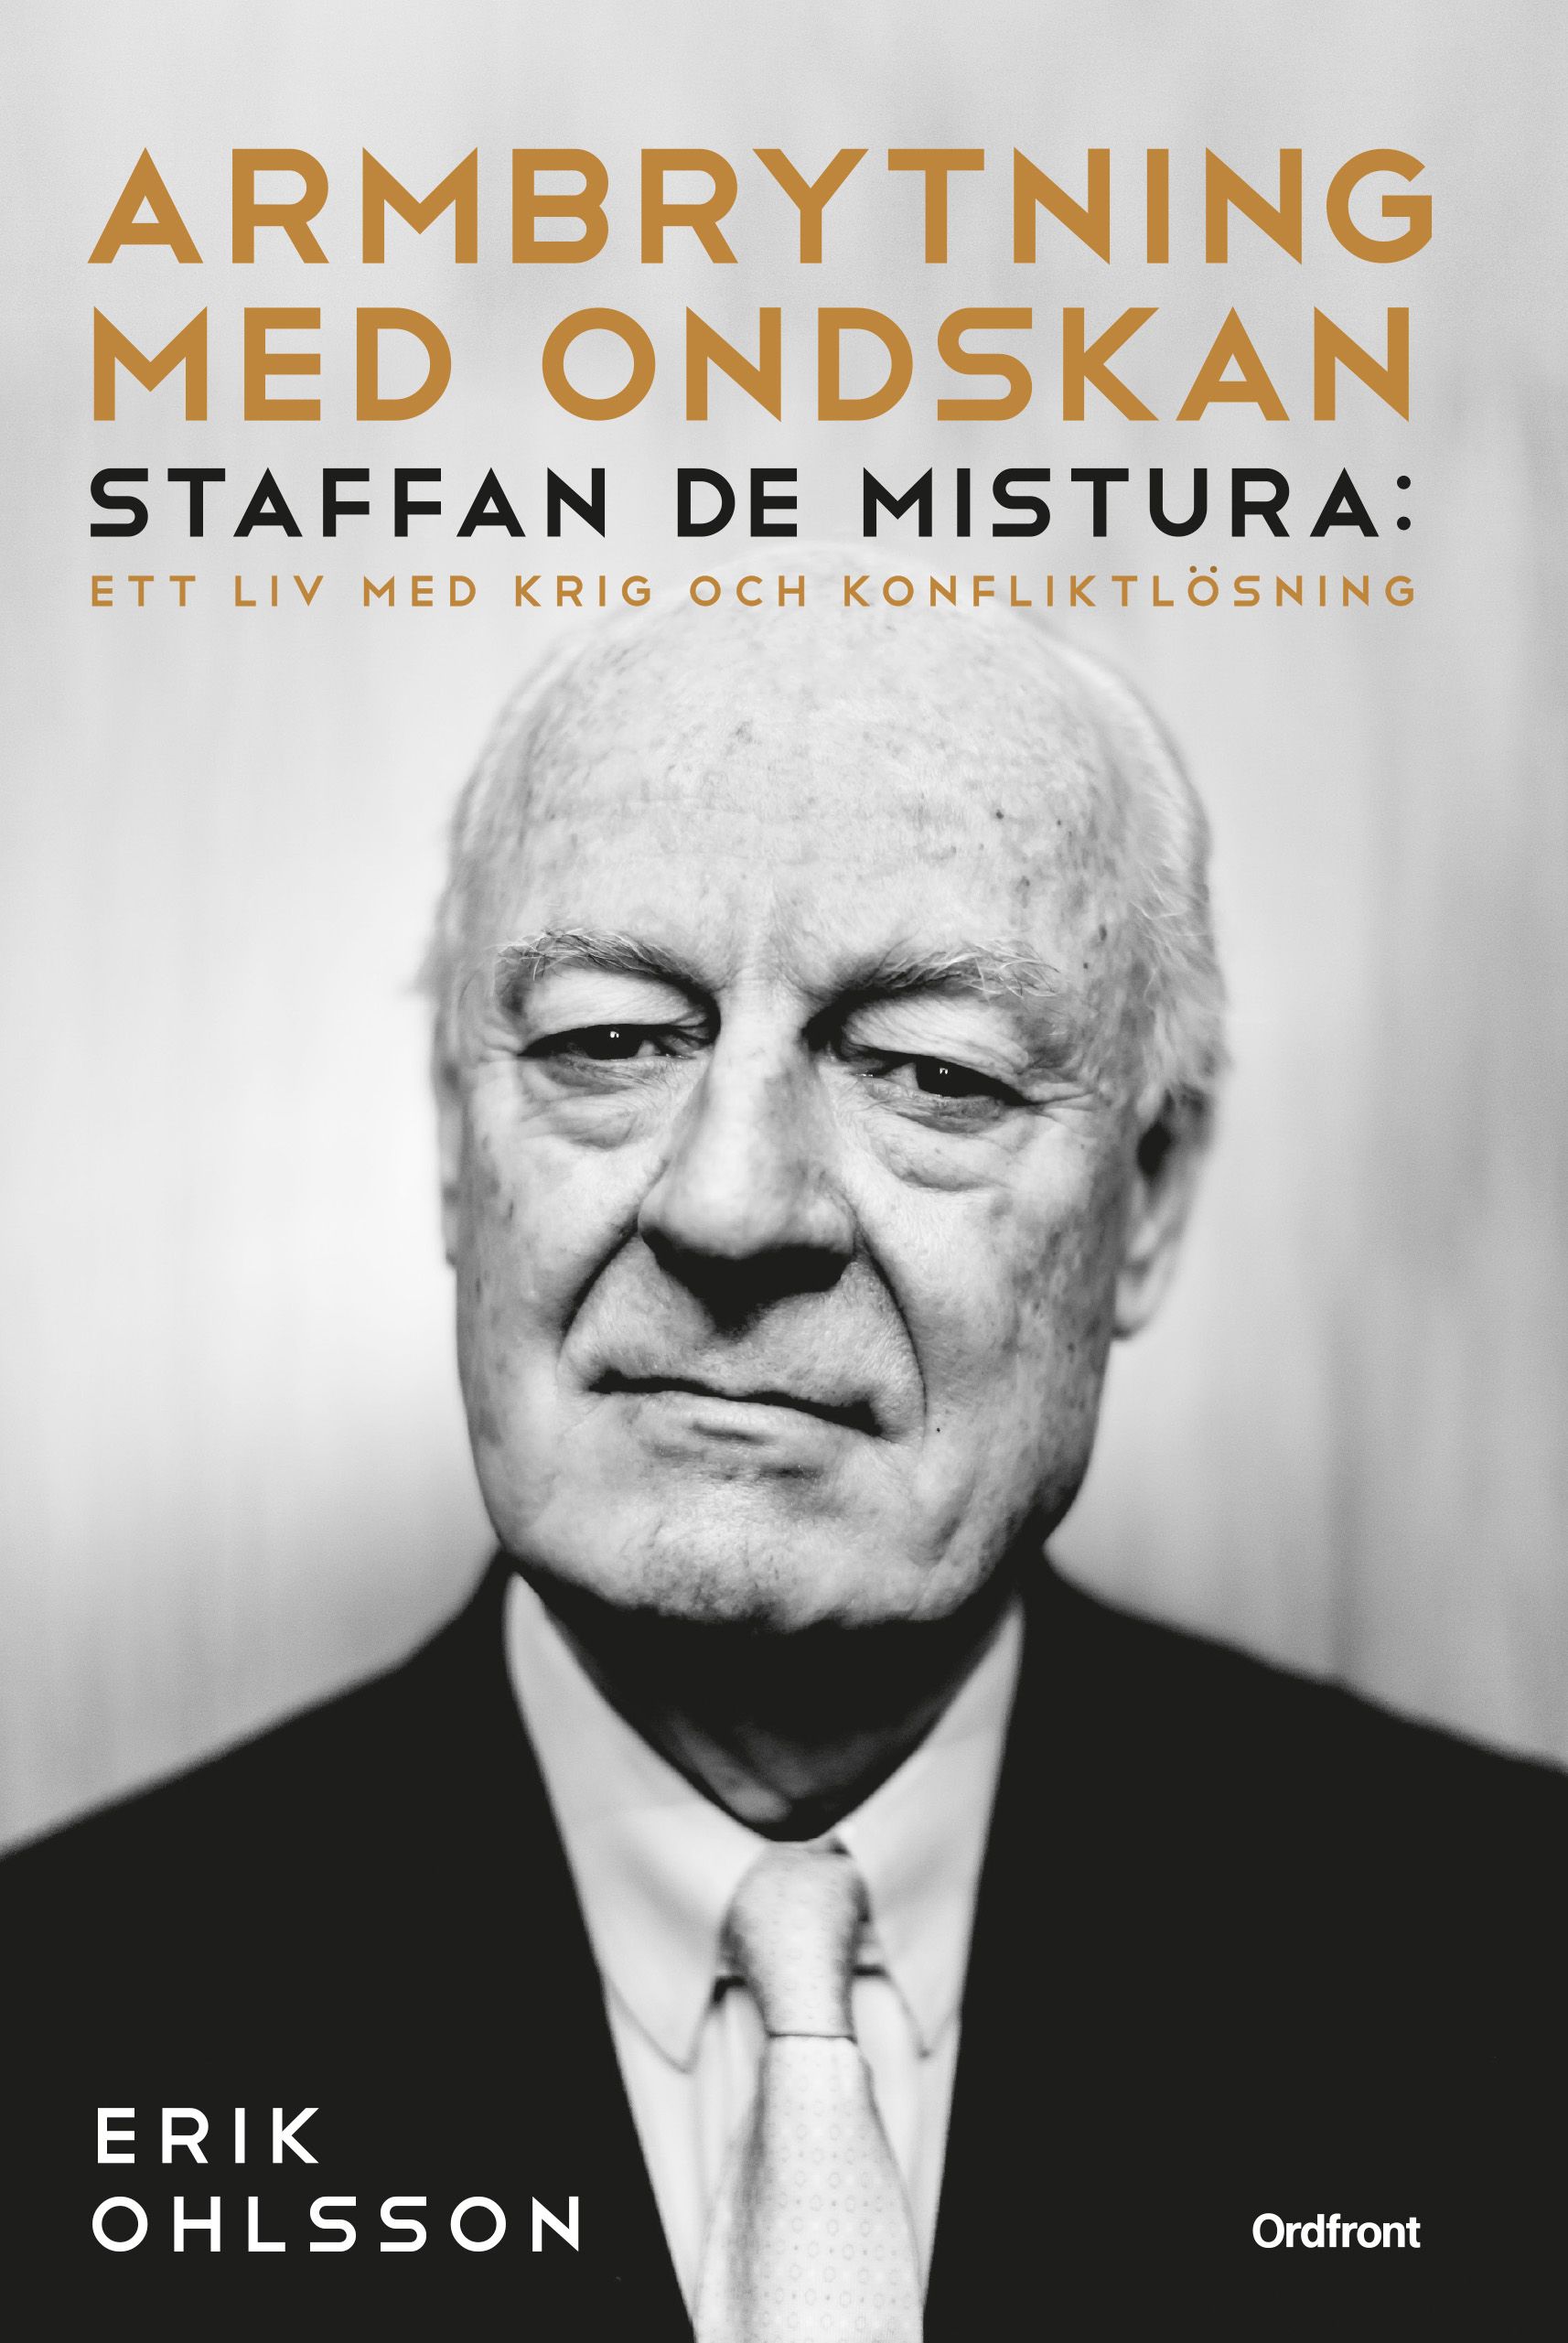 Armbrytning med ondskan : Staffan de Mistura: Ett liv med krig och konfliktlösning, eBook by Erik Ohlsson